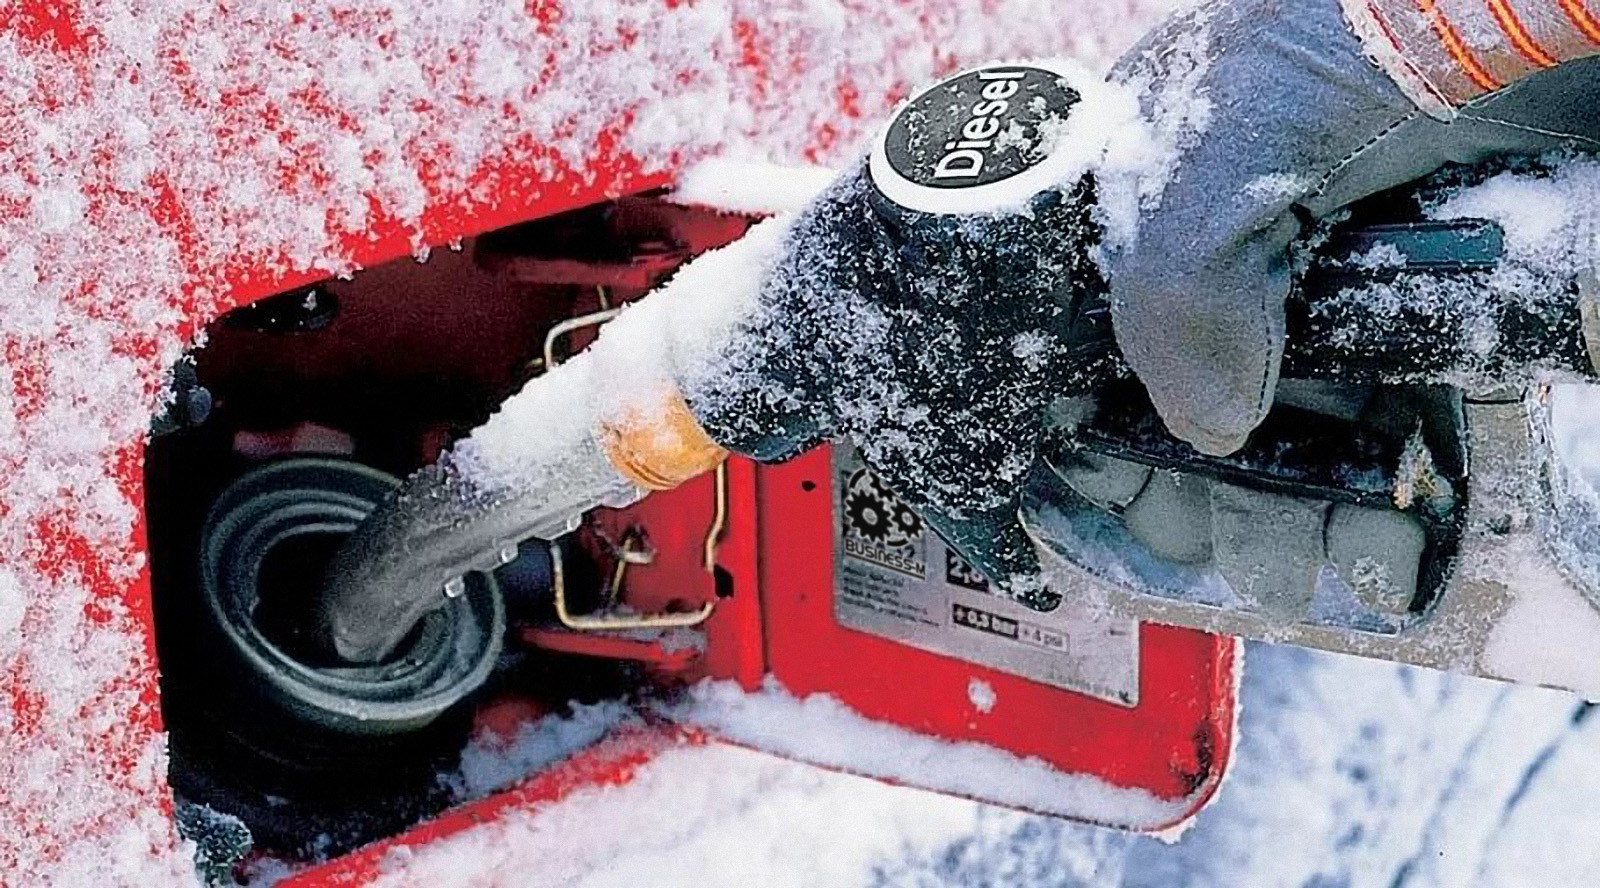 Автоэксперт Колодочкин заявил, что антигели облегчат пуск дизельного двигателя в мороз